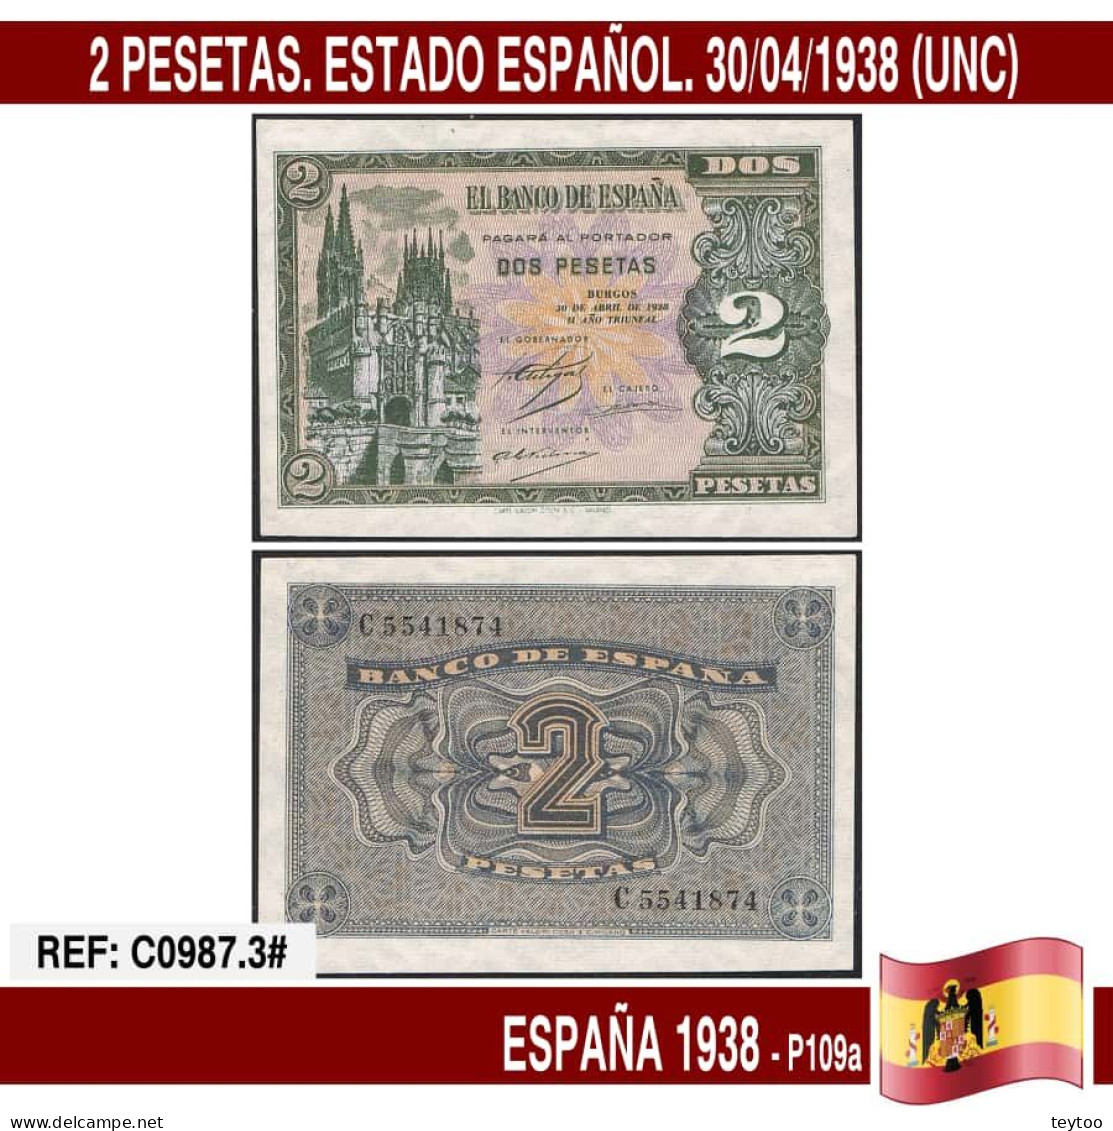 C0987.3# España 1938. 2 Pts. Estado Español (UNC) P109a - 1-2 Pesetas